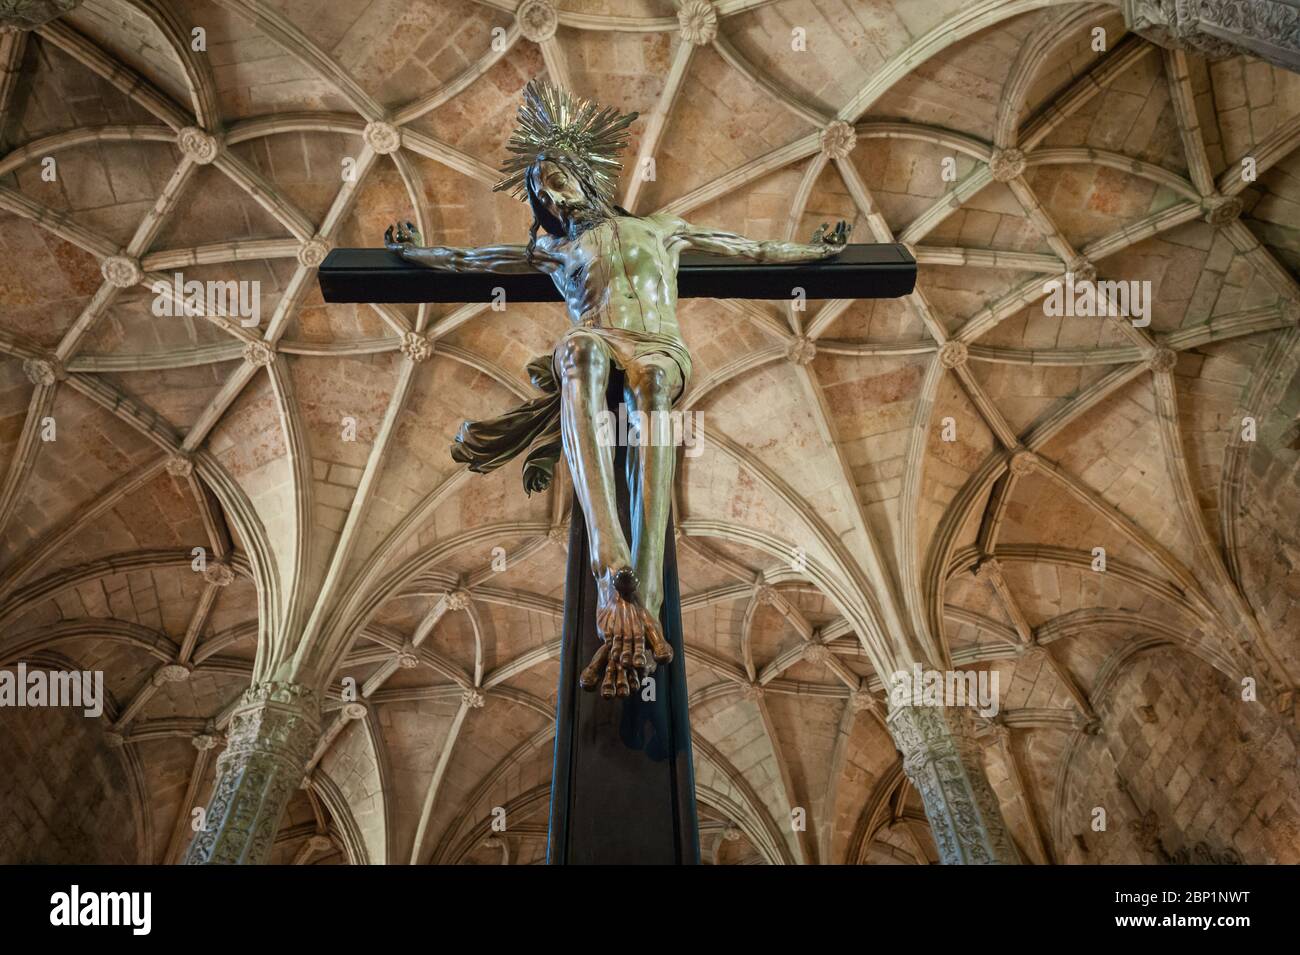 Christus Kruzifix in Santa Maria de Belem Kirche Innenraum - Mosteiro dos Jeronimos - Belem Bezirk - Lissabon, Portugal Stockfoto